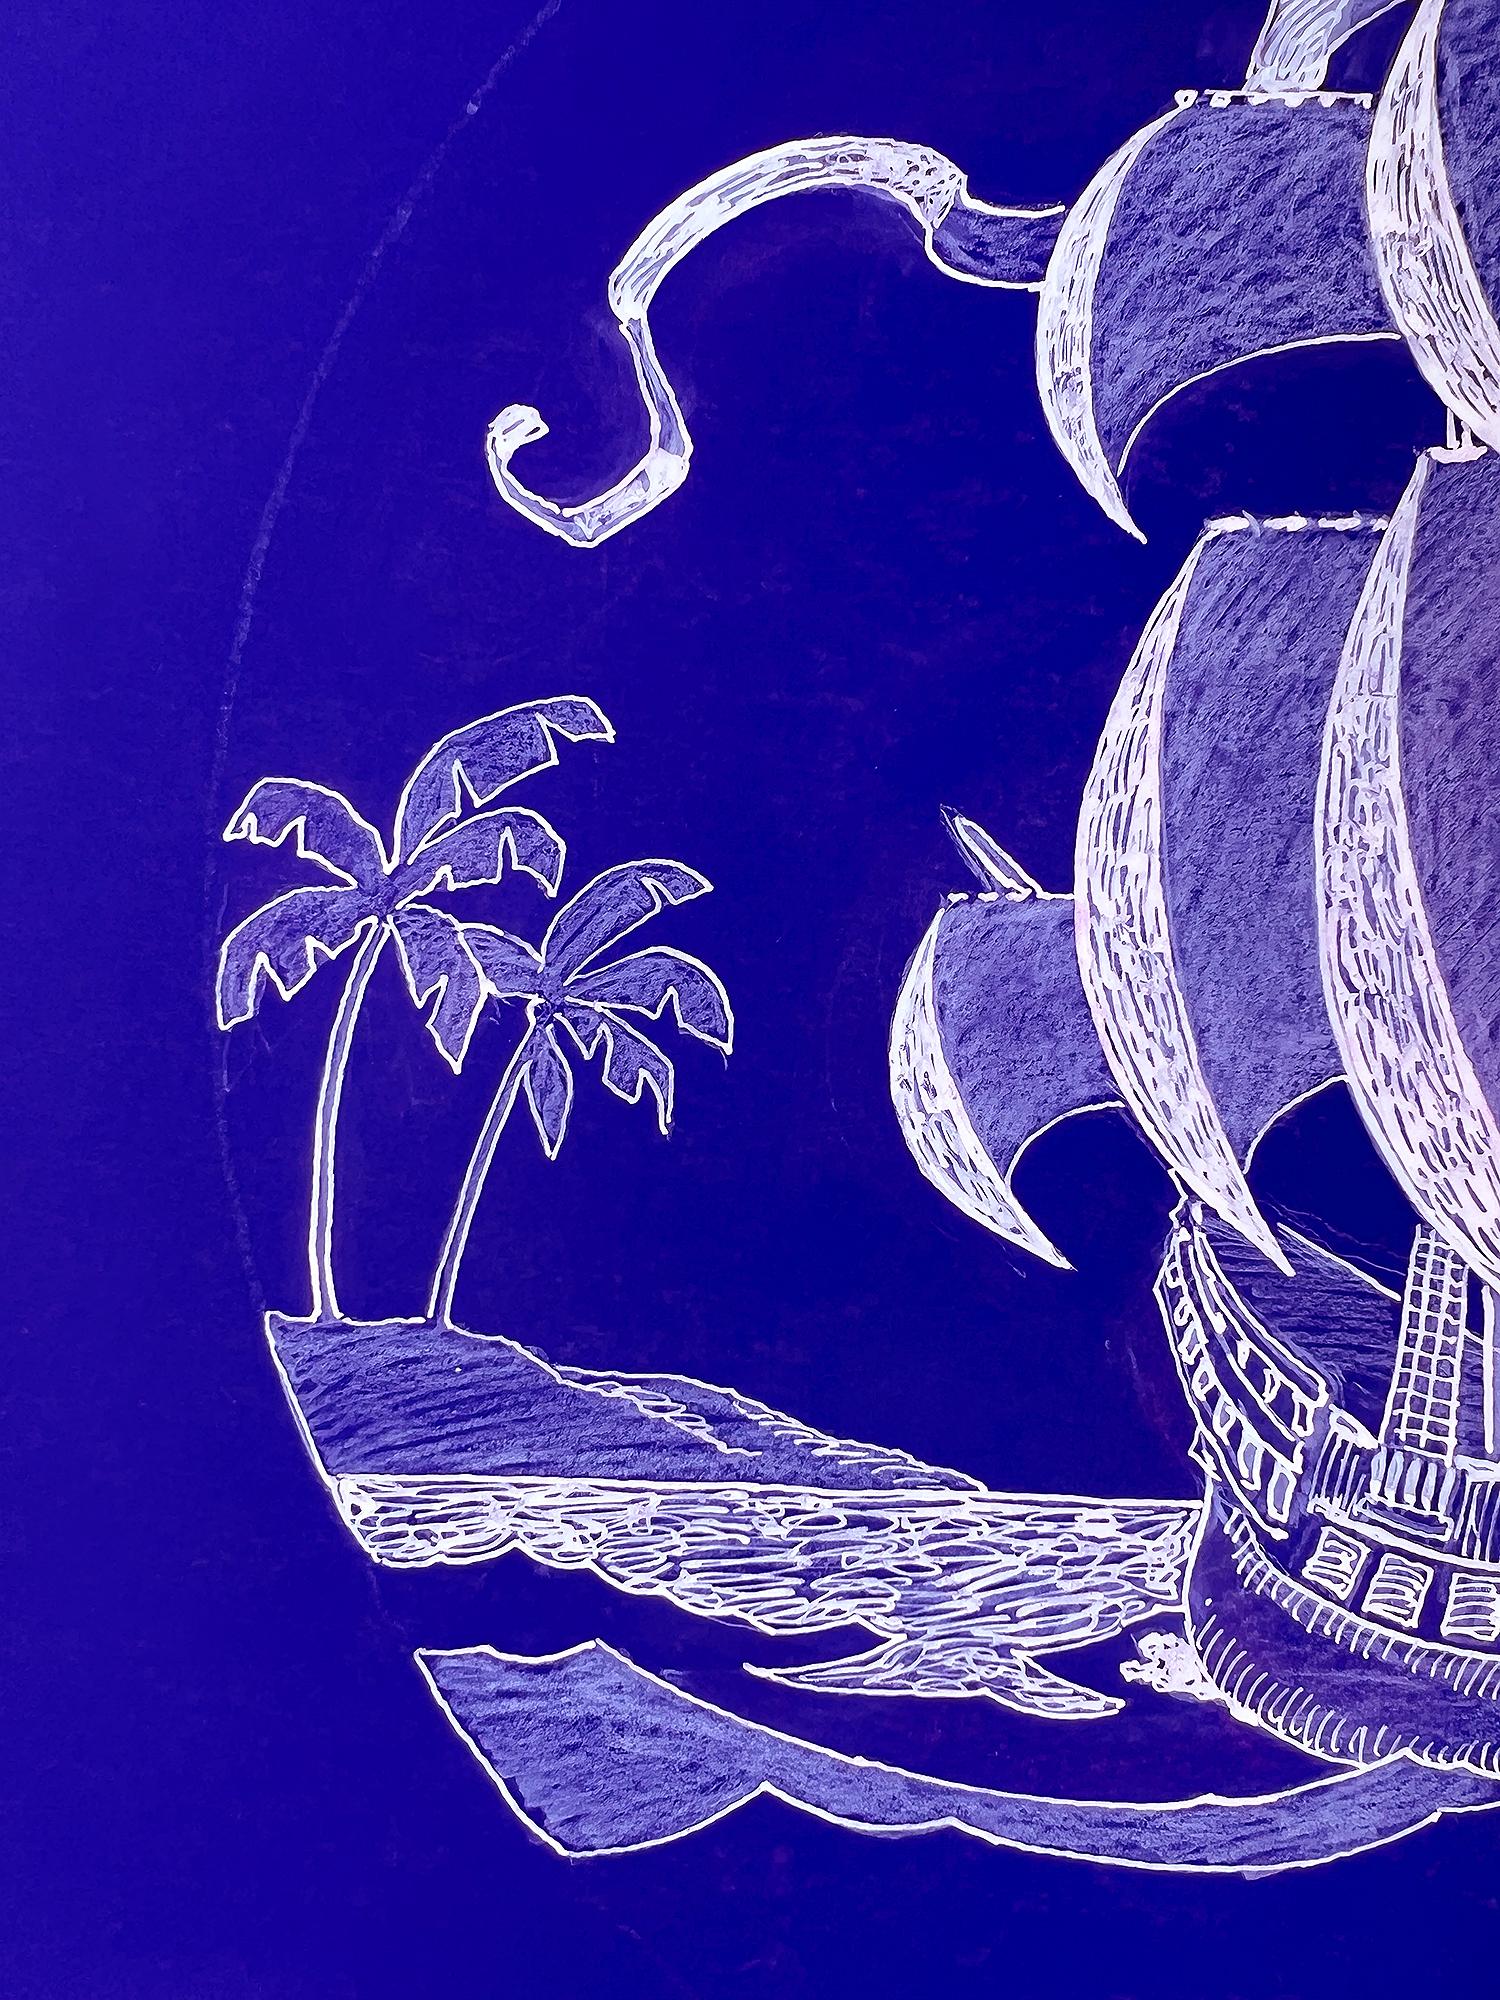 Piratenschiff  - Totenkopf und Kreuzknochen  Sieben Meeres-Illustration in Weiß und Blau  (Amerikanischer Realismus), Art, von Jamie Wyeth